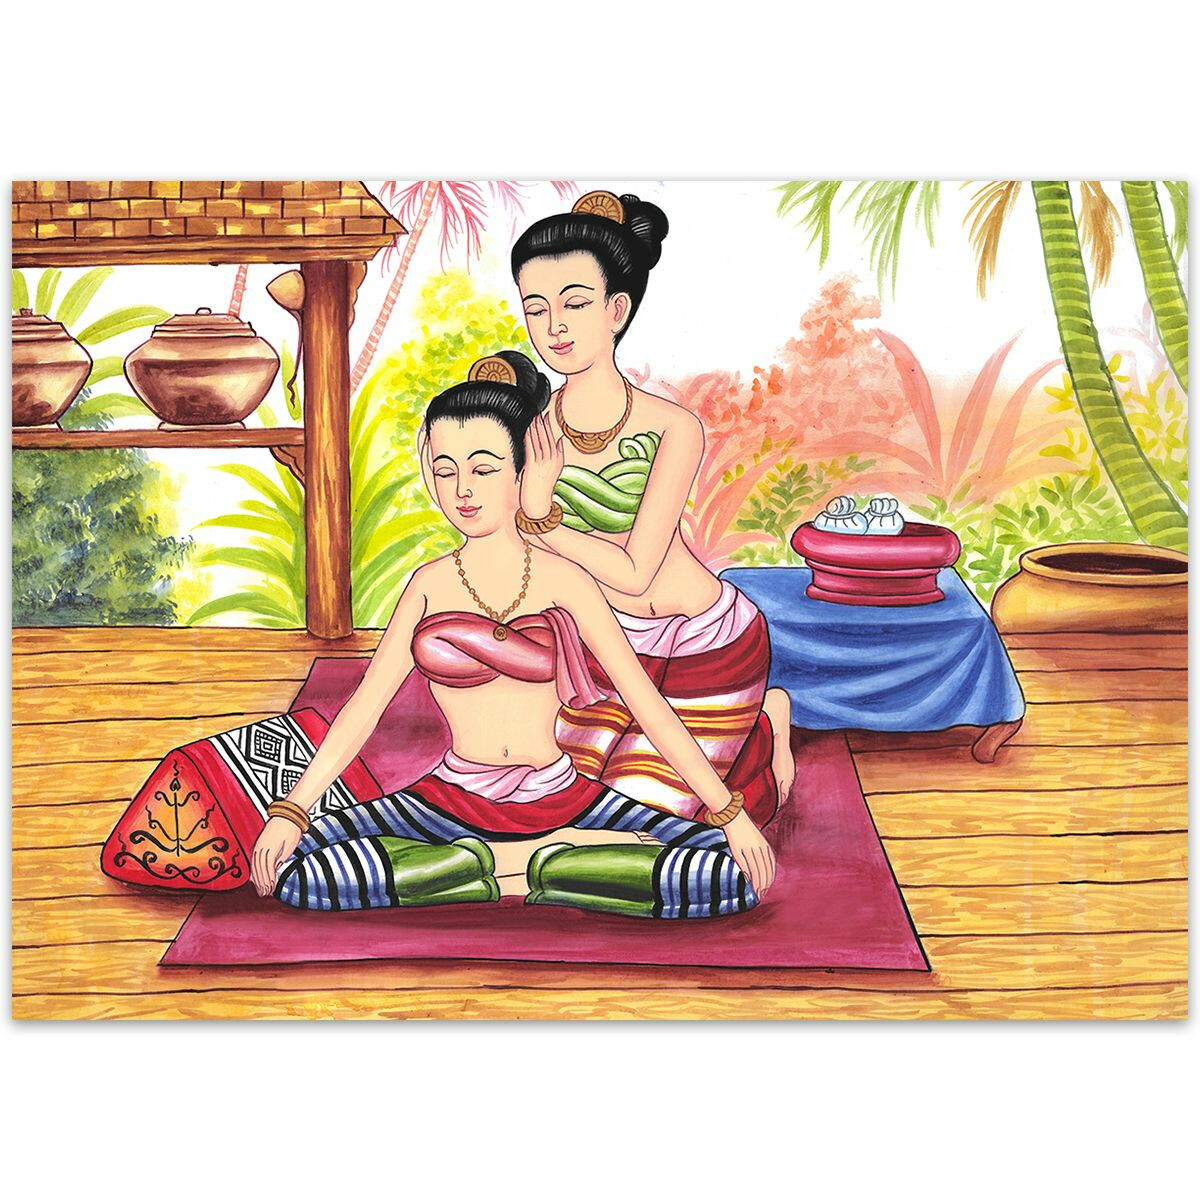 Thai Paintings traditional Thai Massage Siam - No. 12